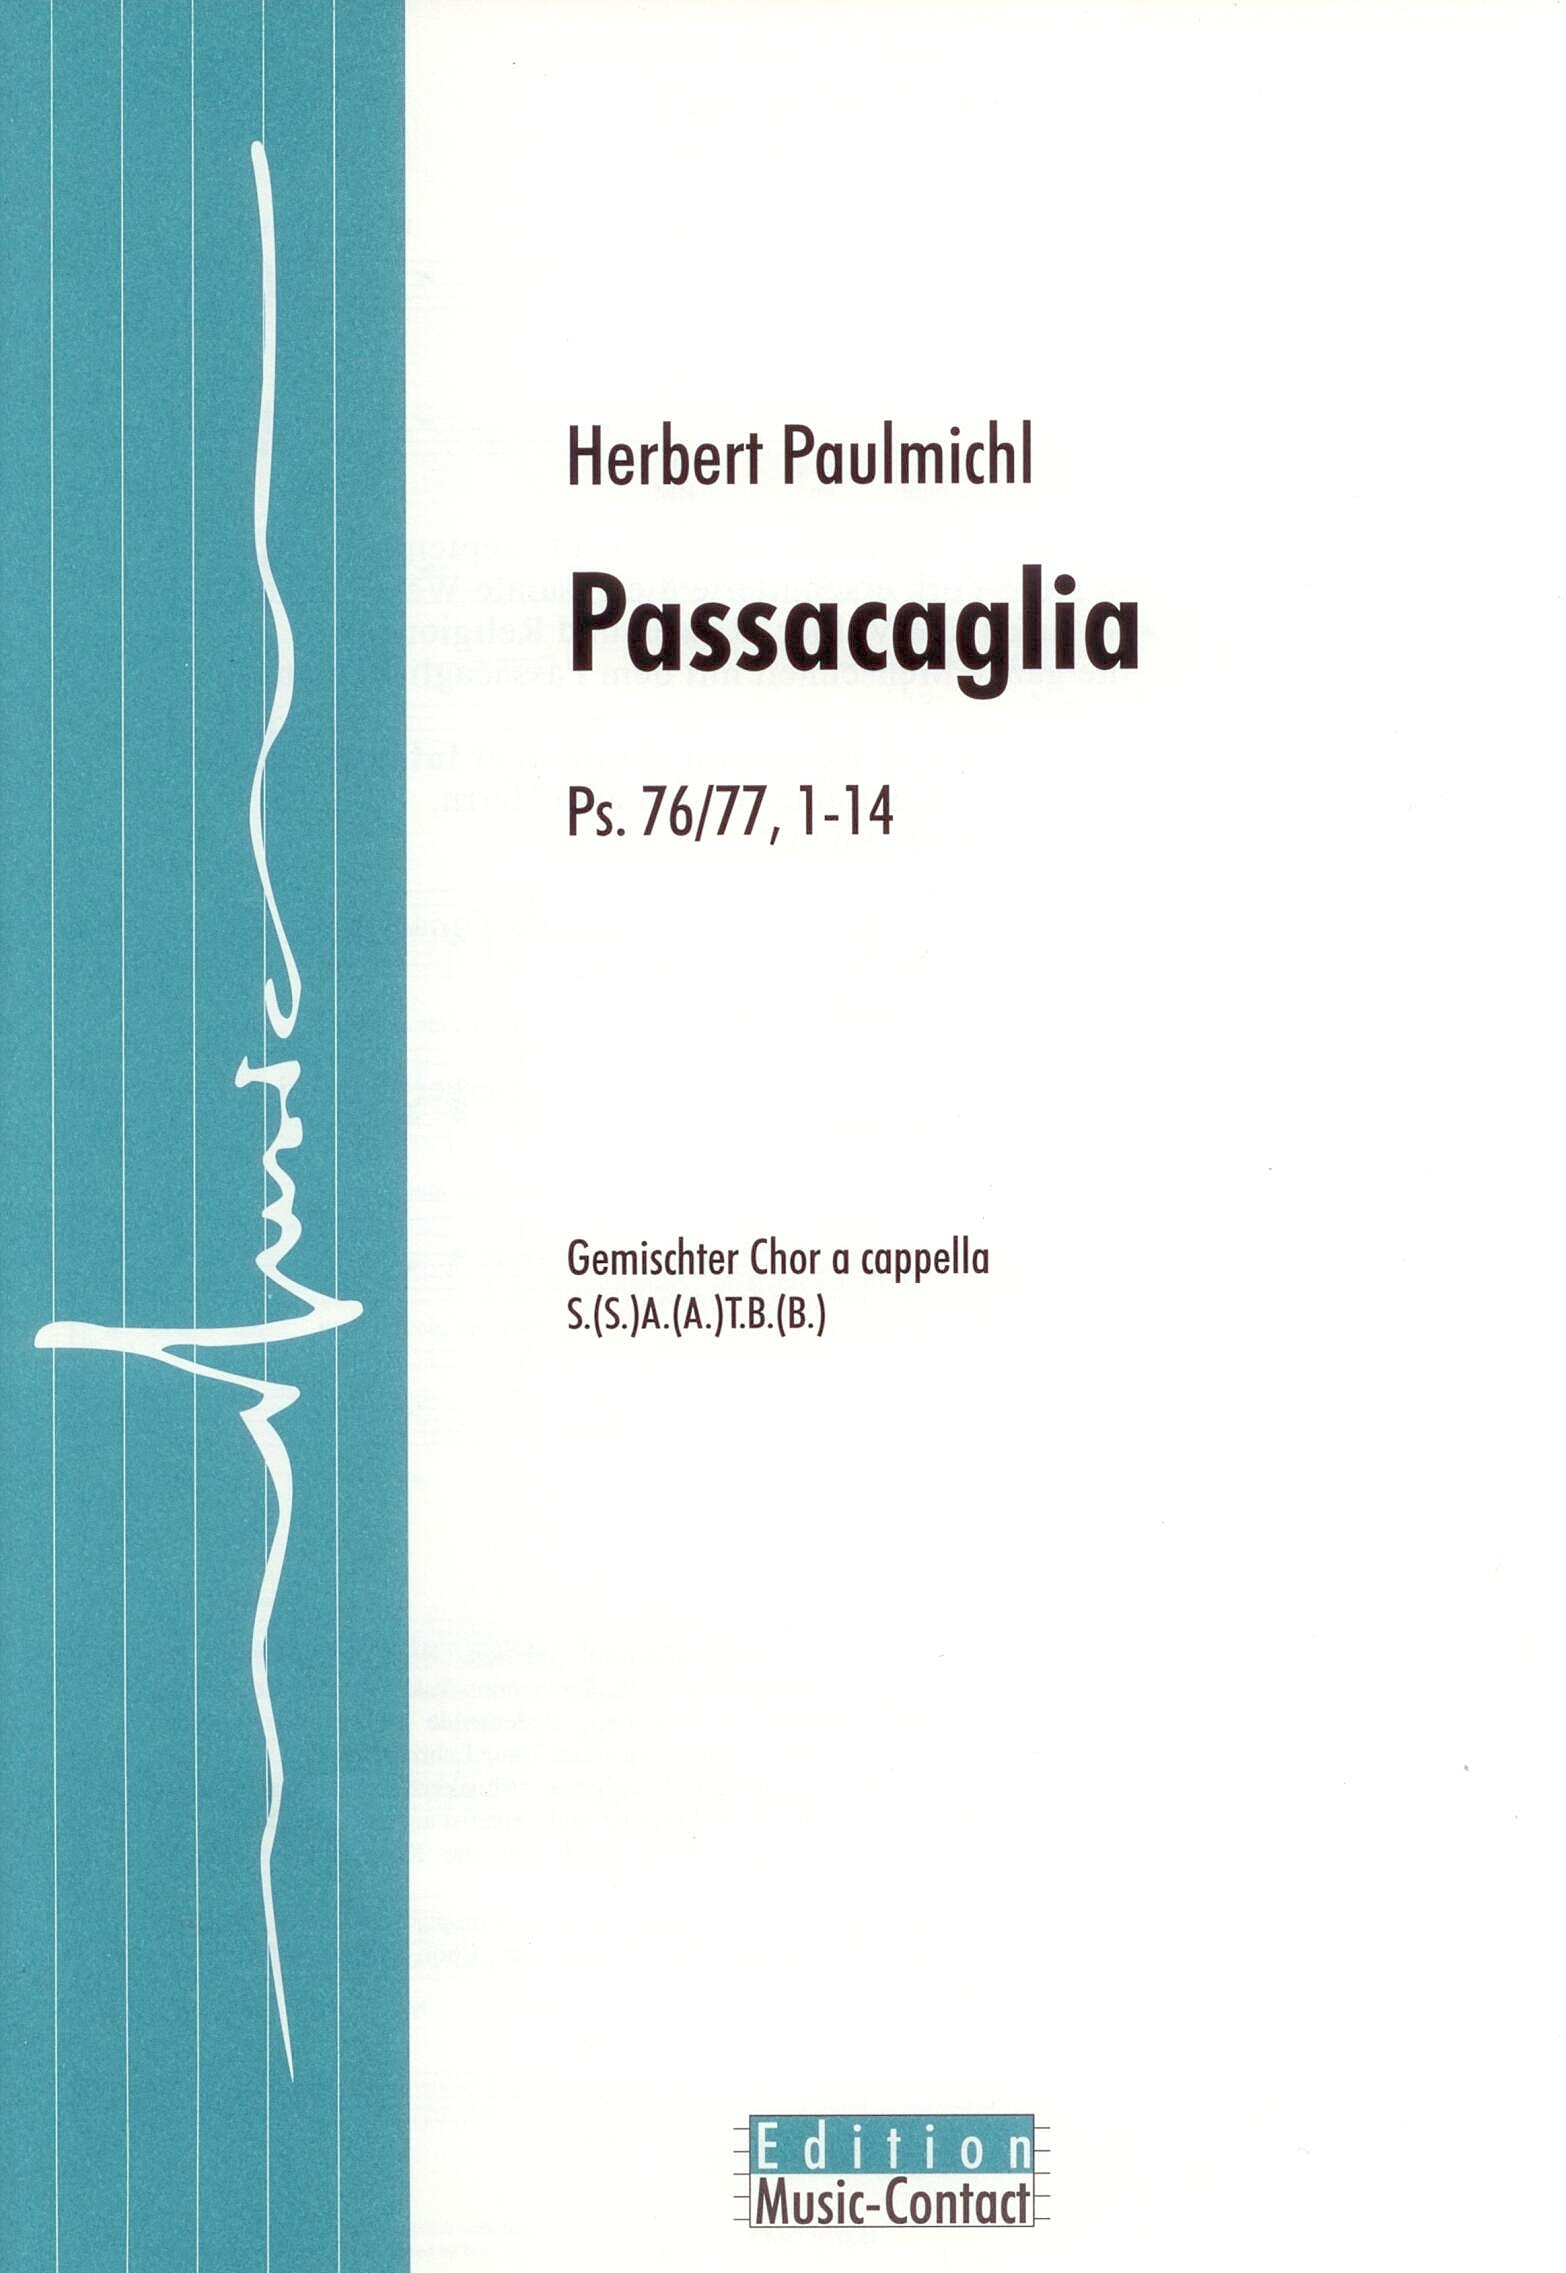 Passacaglia - Show sample score